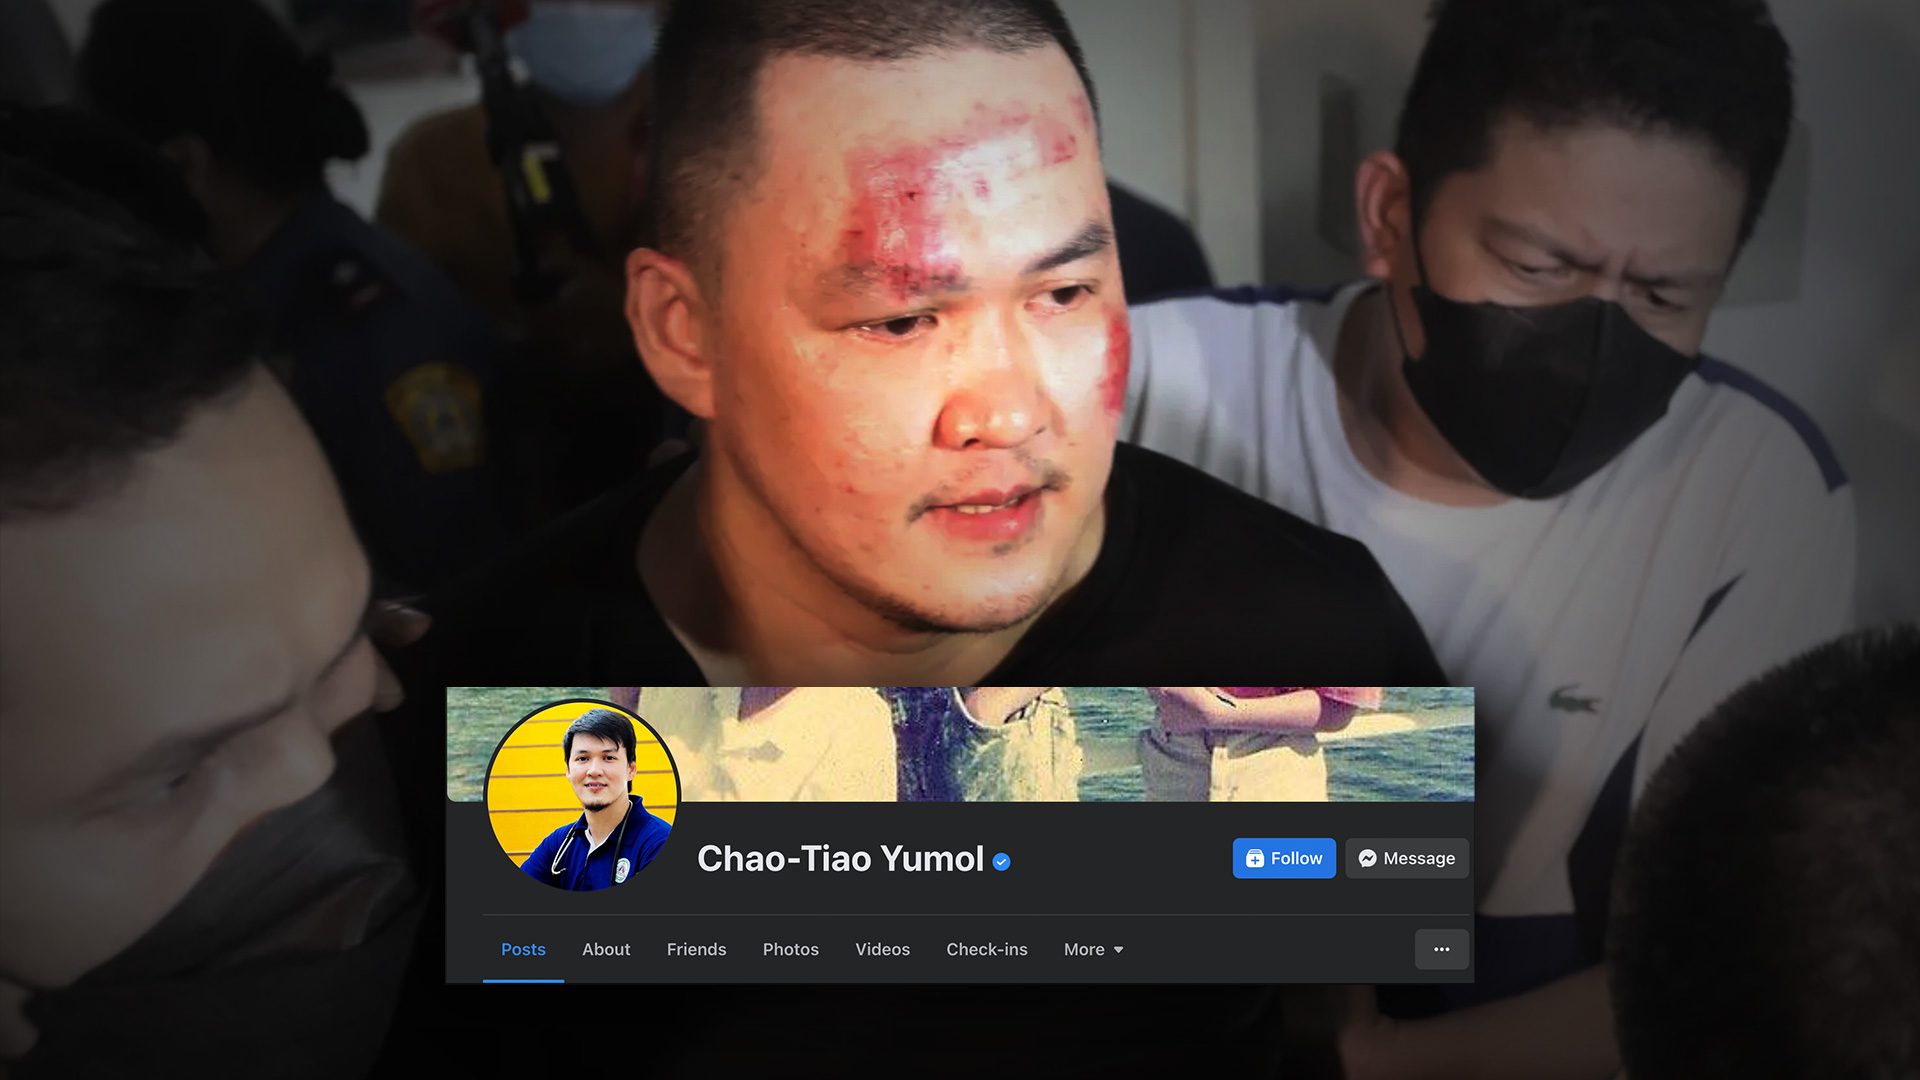 Facebook takes down verified account of gunman Chao Tiao Yumol